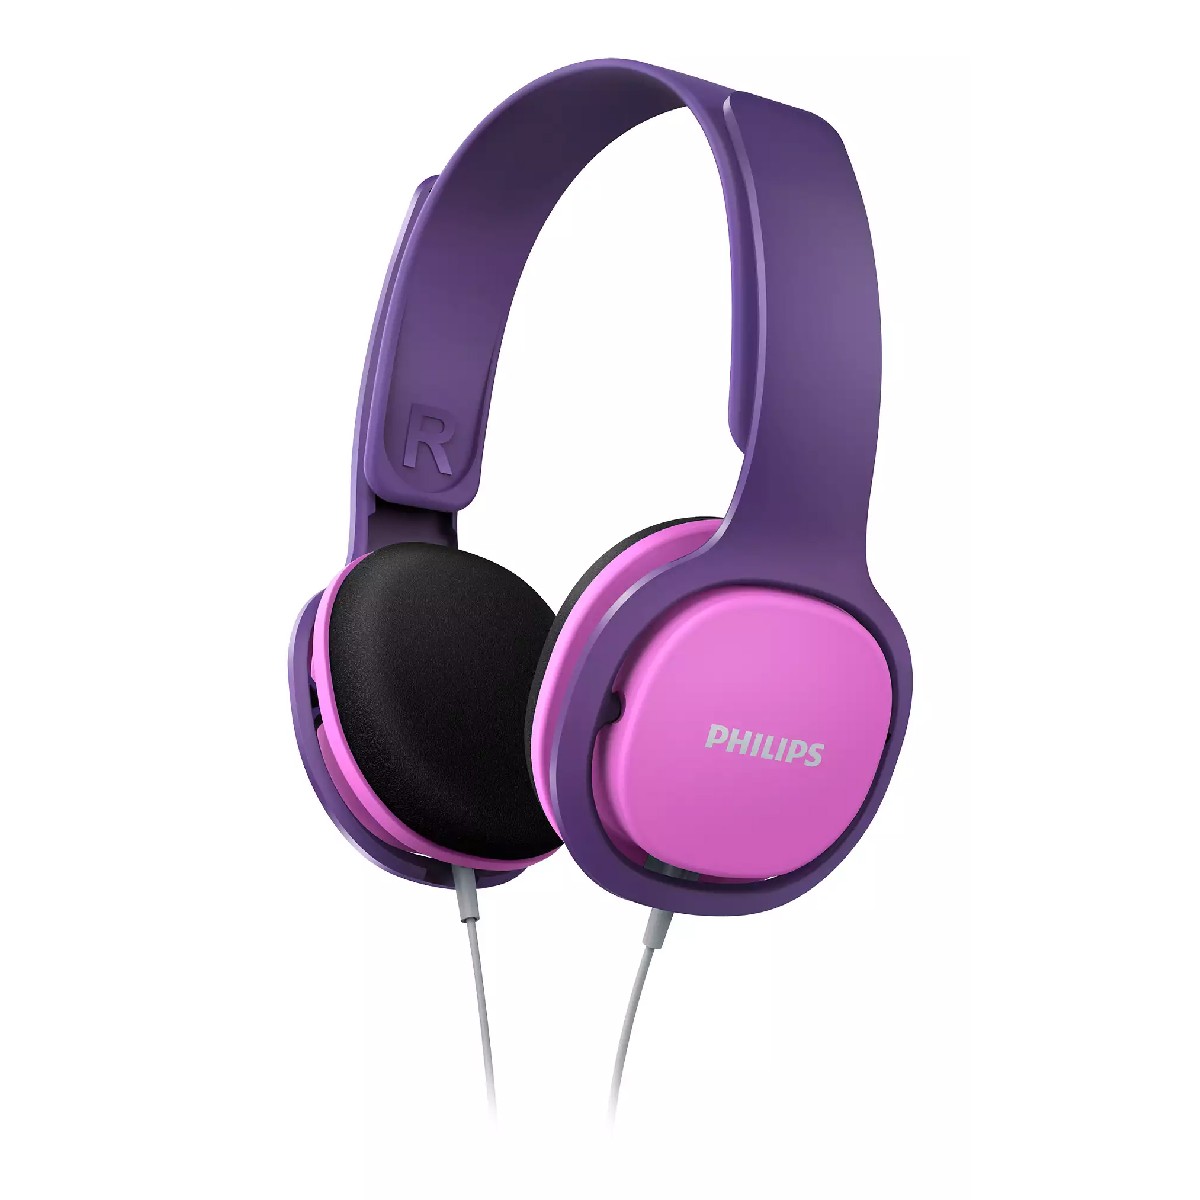 Ακουστικά Stereo Philips On-Ear Kids SHK2000PK/00 32mm Ροζ-Μωβ μεΈλεγχο Έντασης ¨Ηχου και Αποσπώμενα Ακουστικά